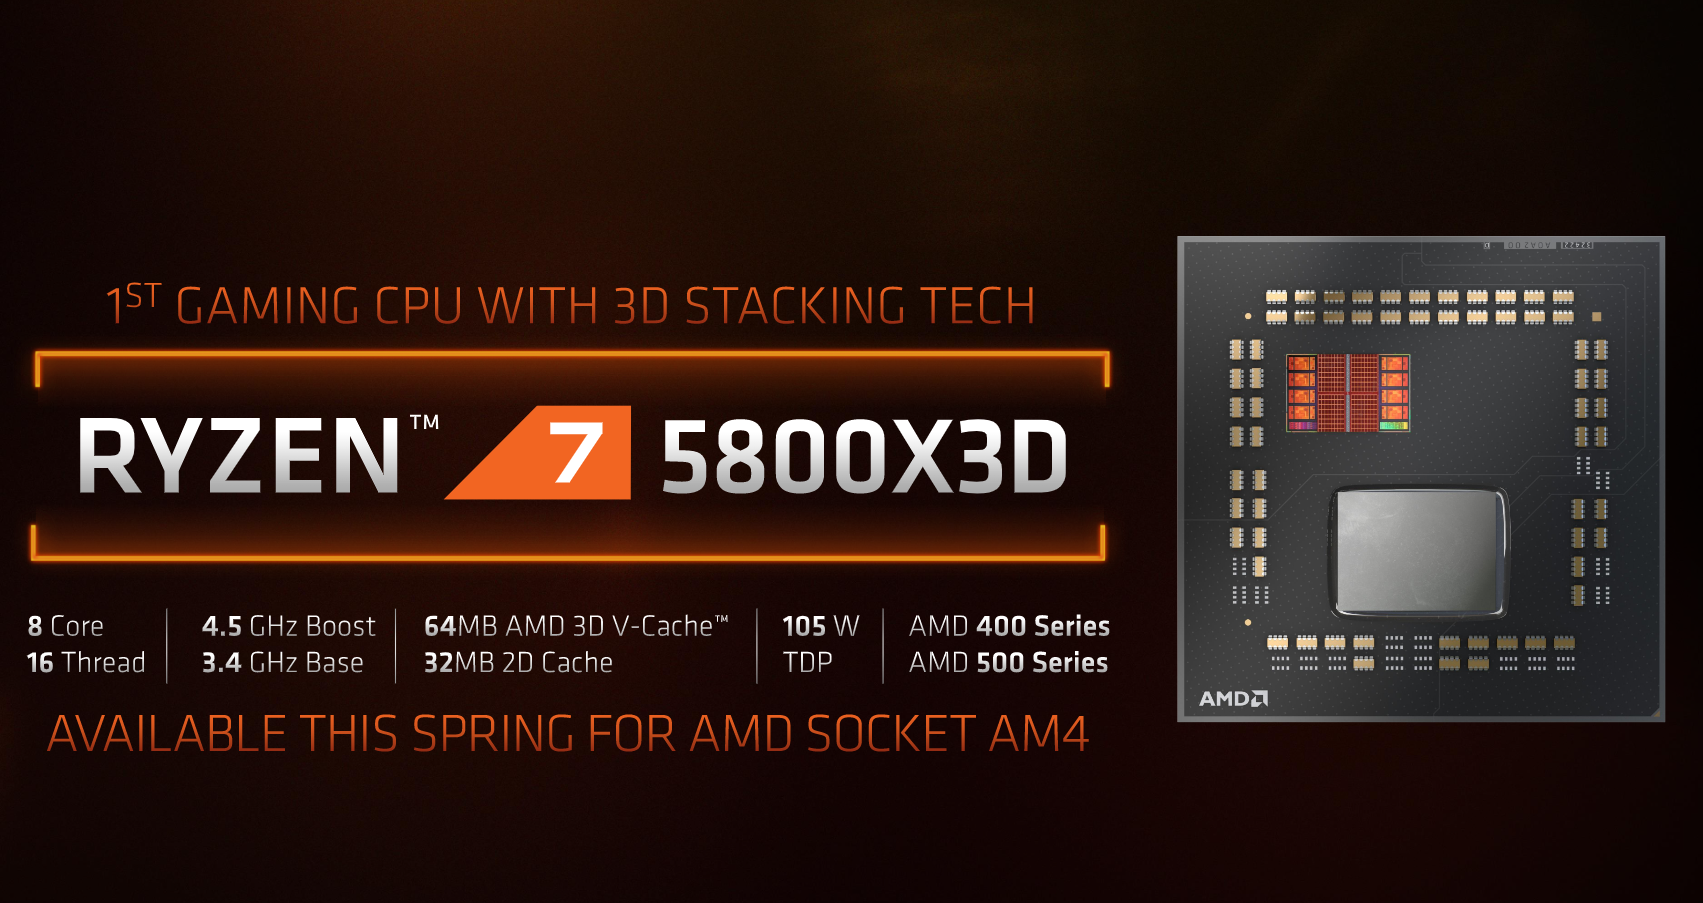 Image: AMD